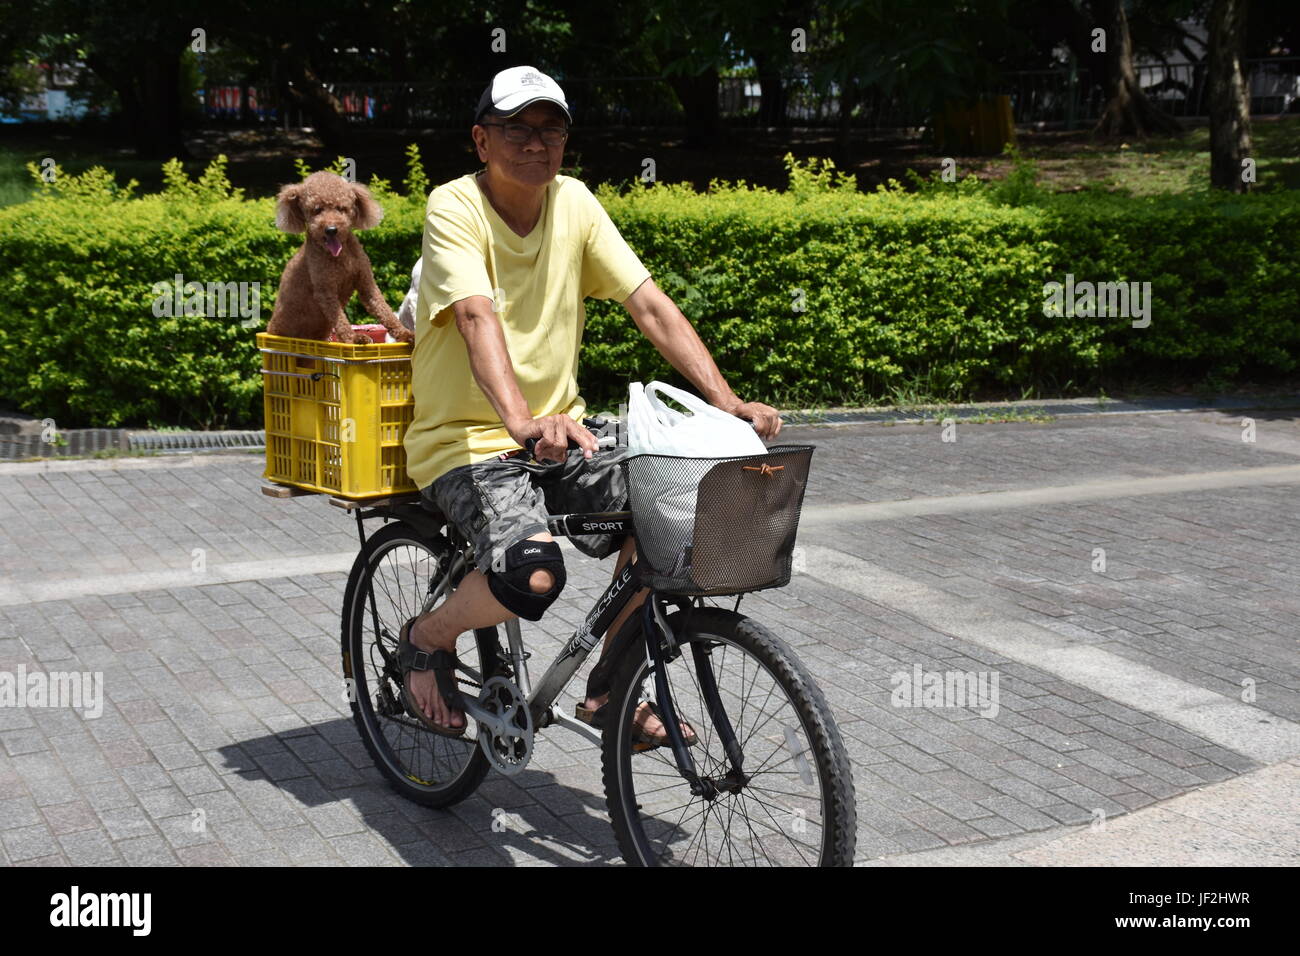 Alter Mann auf dem Fahrrad mit Hund ging in Korb für eine Fahrt in das heiße 94F Wetter im Park heute zurück. New Taipei City, Taiwan. Stockfoto